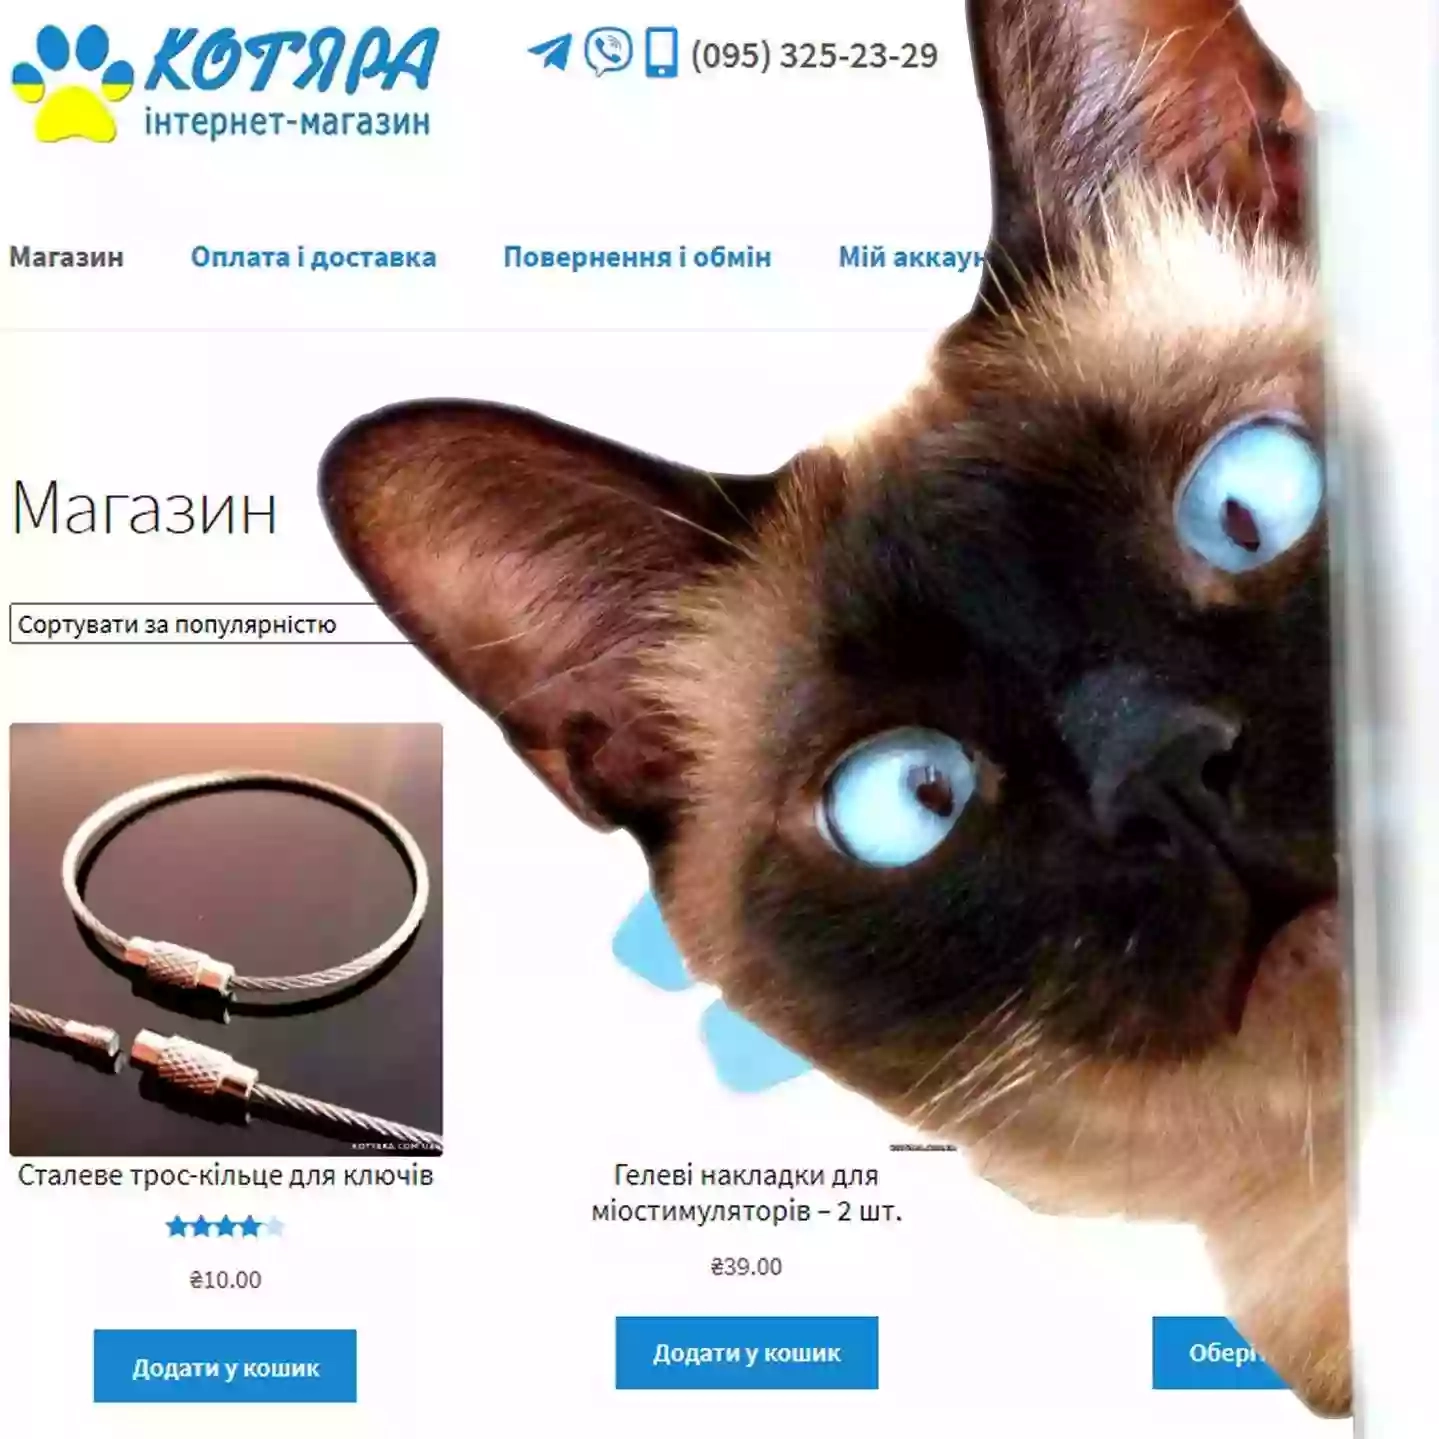 Інтернет-магазин "Котяра"